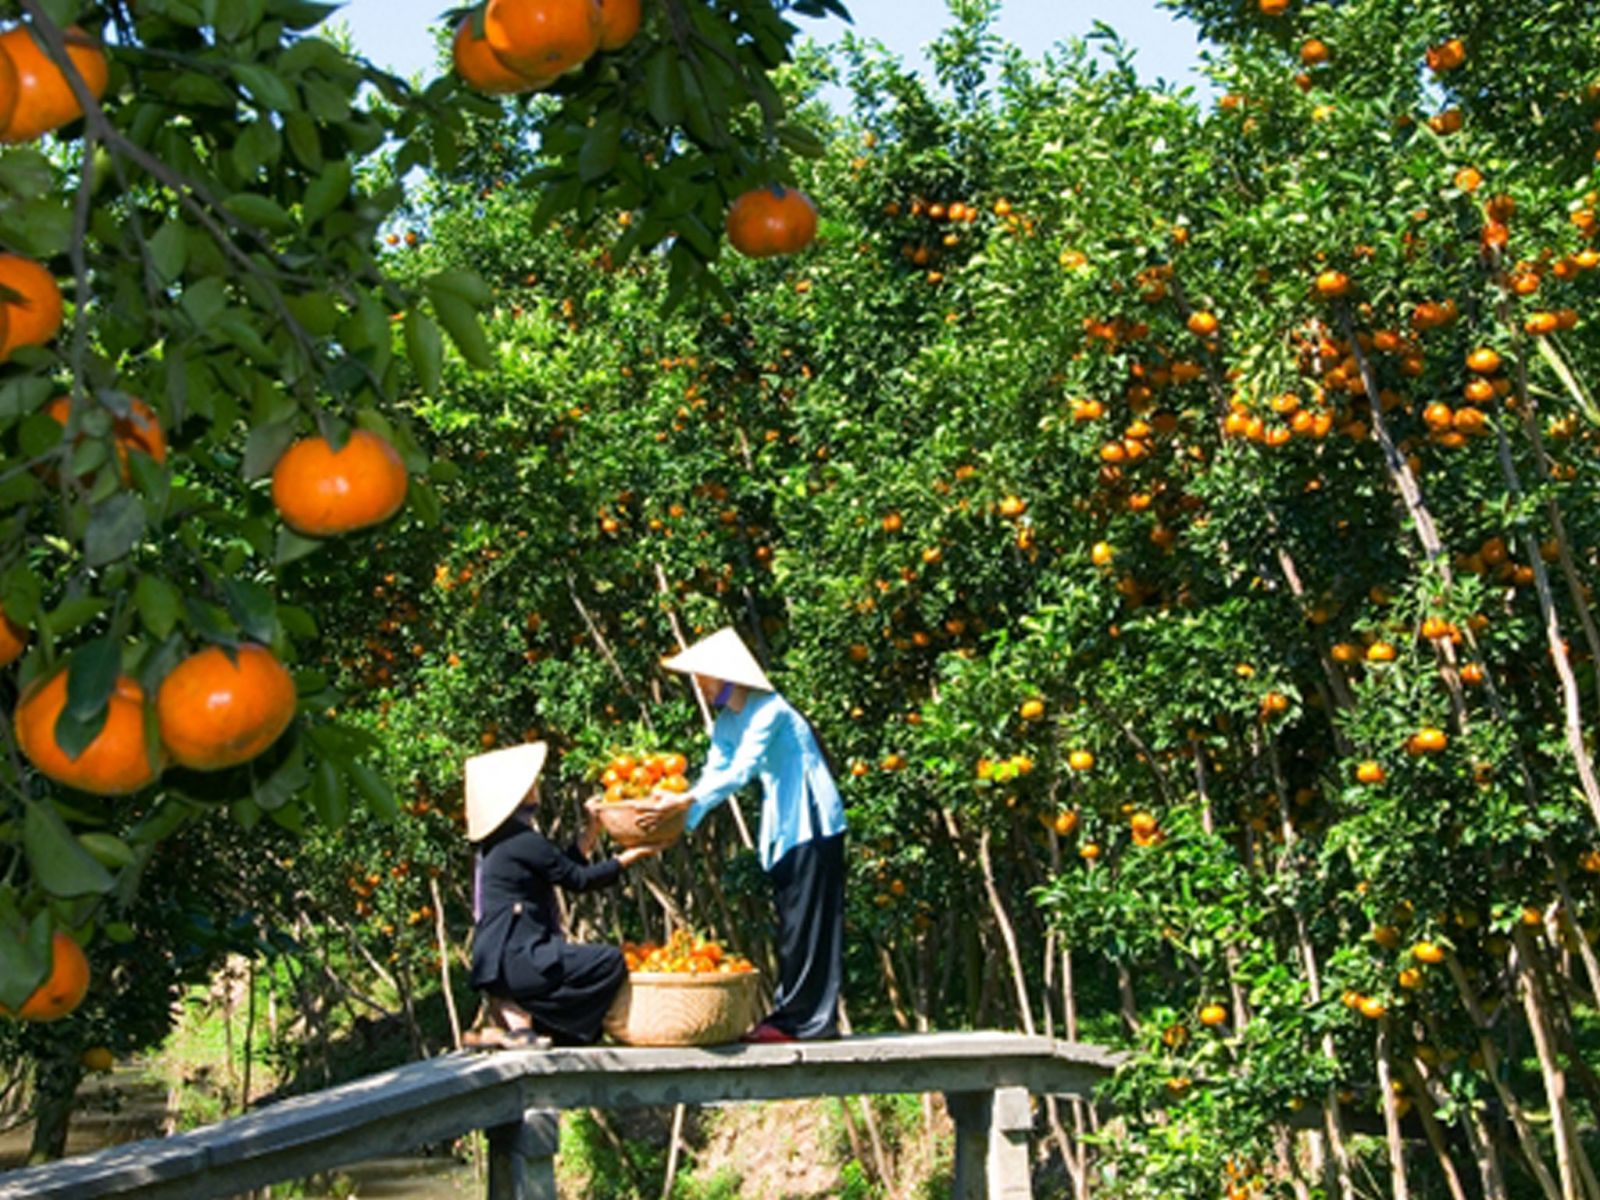 Mùa trái cây – Thời điểm đẹp nhất để đi du lịch ở Tiền Giang